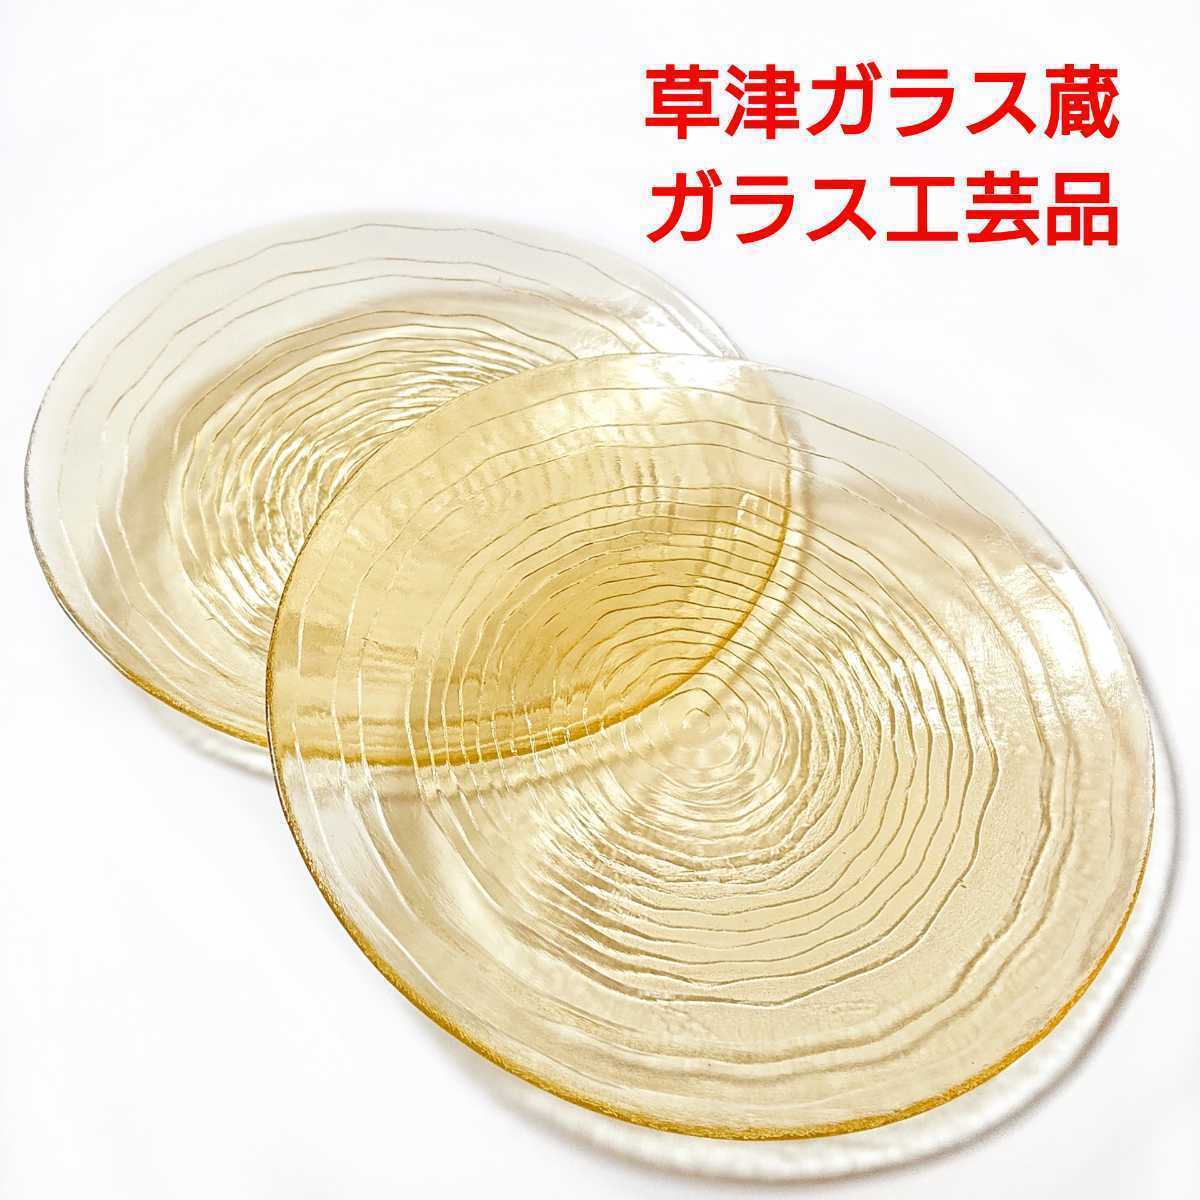 Kusatsu Onsen/Kusatsu Glass Warehouse/Artisanat en verre/Plaque de verre/Fait main/Jaune, Vaisselle de style occidental, plaque, plat, autres